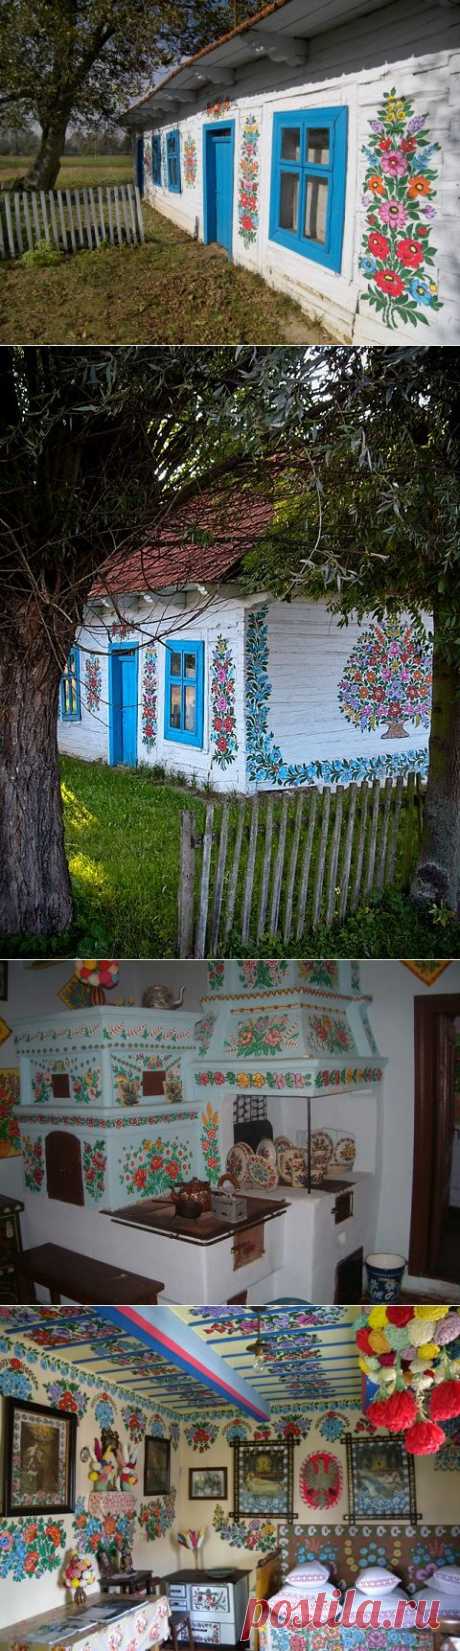 Красочные дома в польской деревне — 6 соток